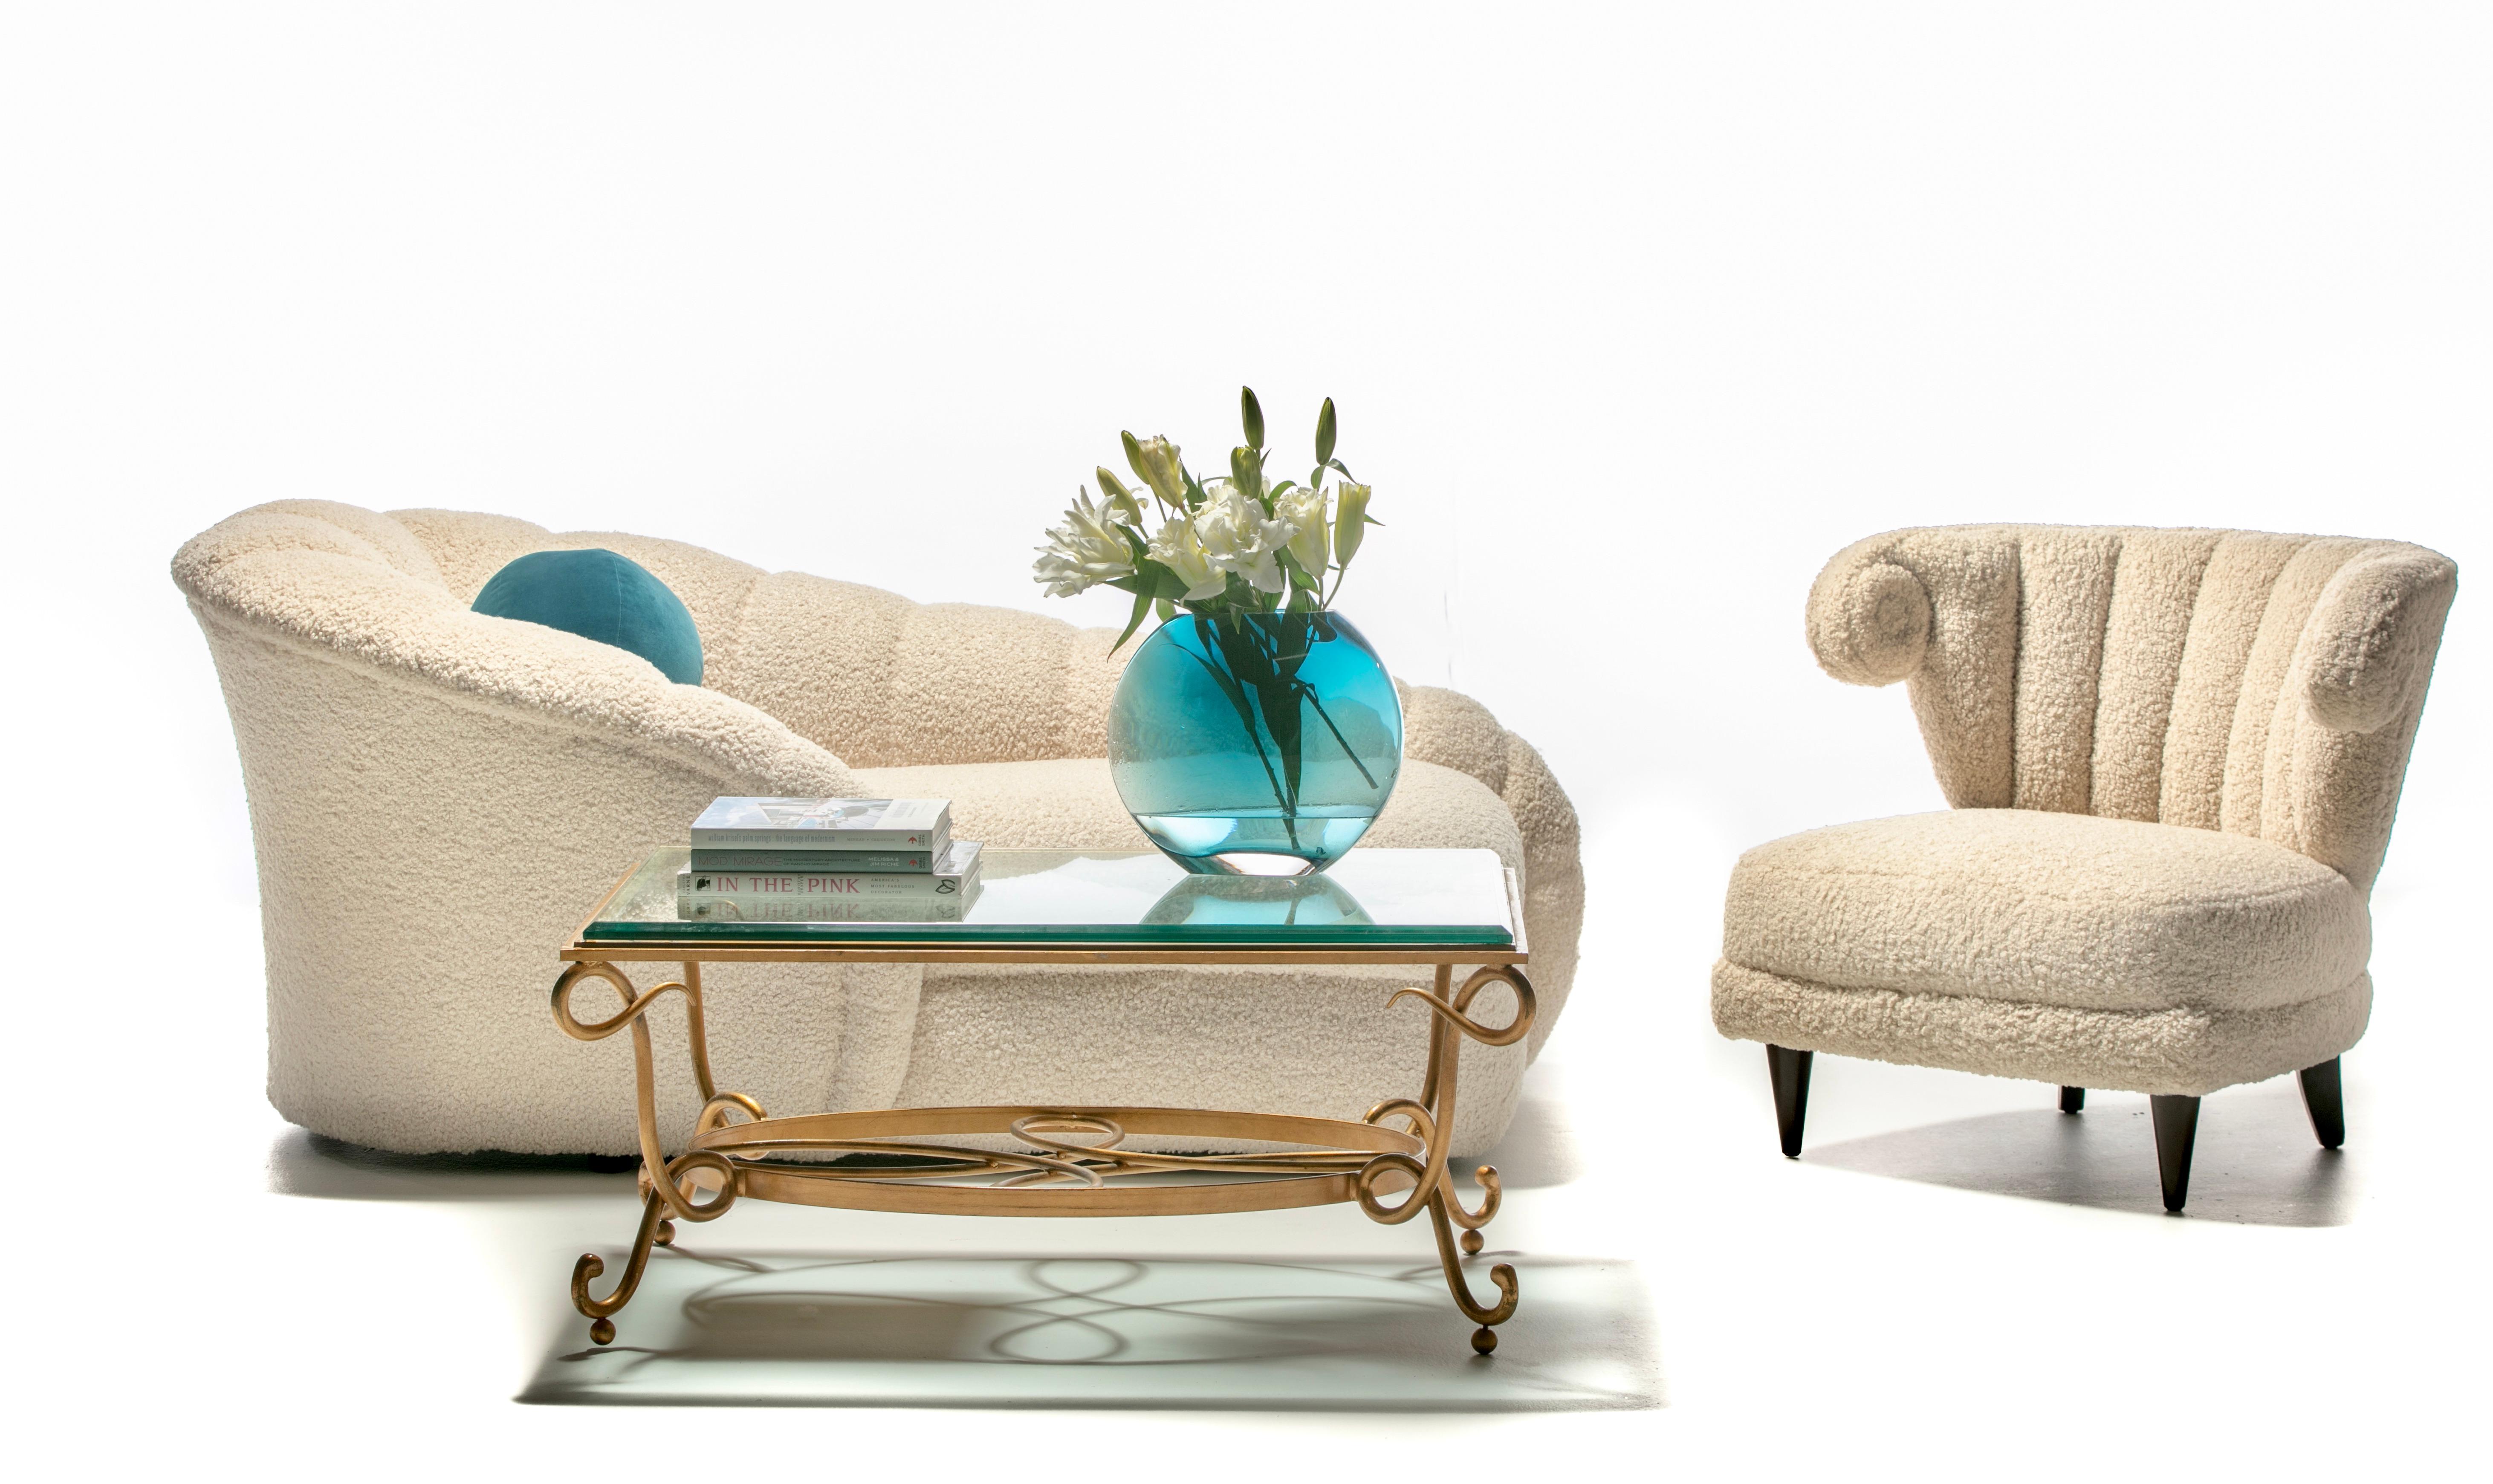 Un confort luxueux et enveloppant, c'est ainsi que l'on peut décrire cette sexy chaise longue post-moderne conçue par Vladimir Kagan pour Directional, nouvellement tapissée de manière professionnelle en bouclé blanc ivoire très durable et très doux.